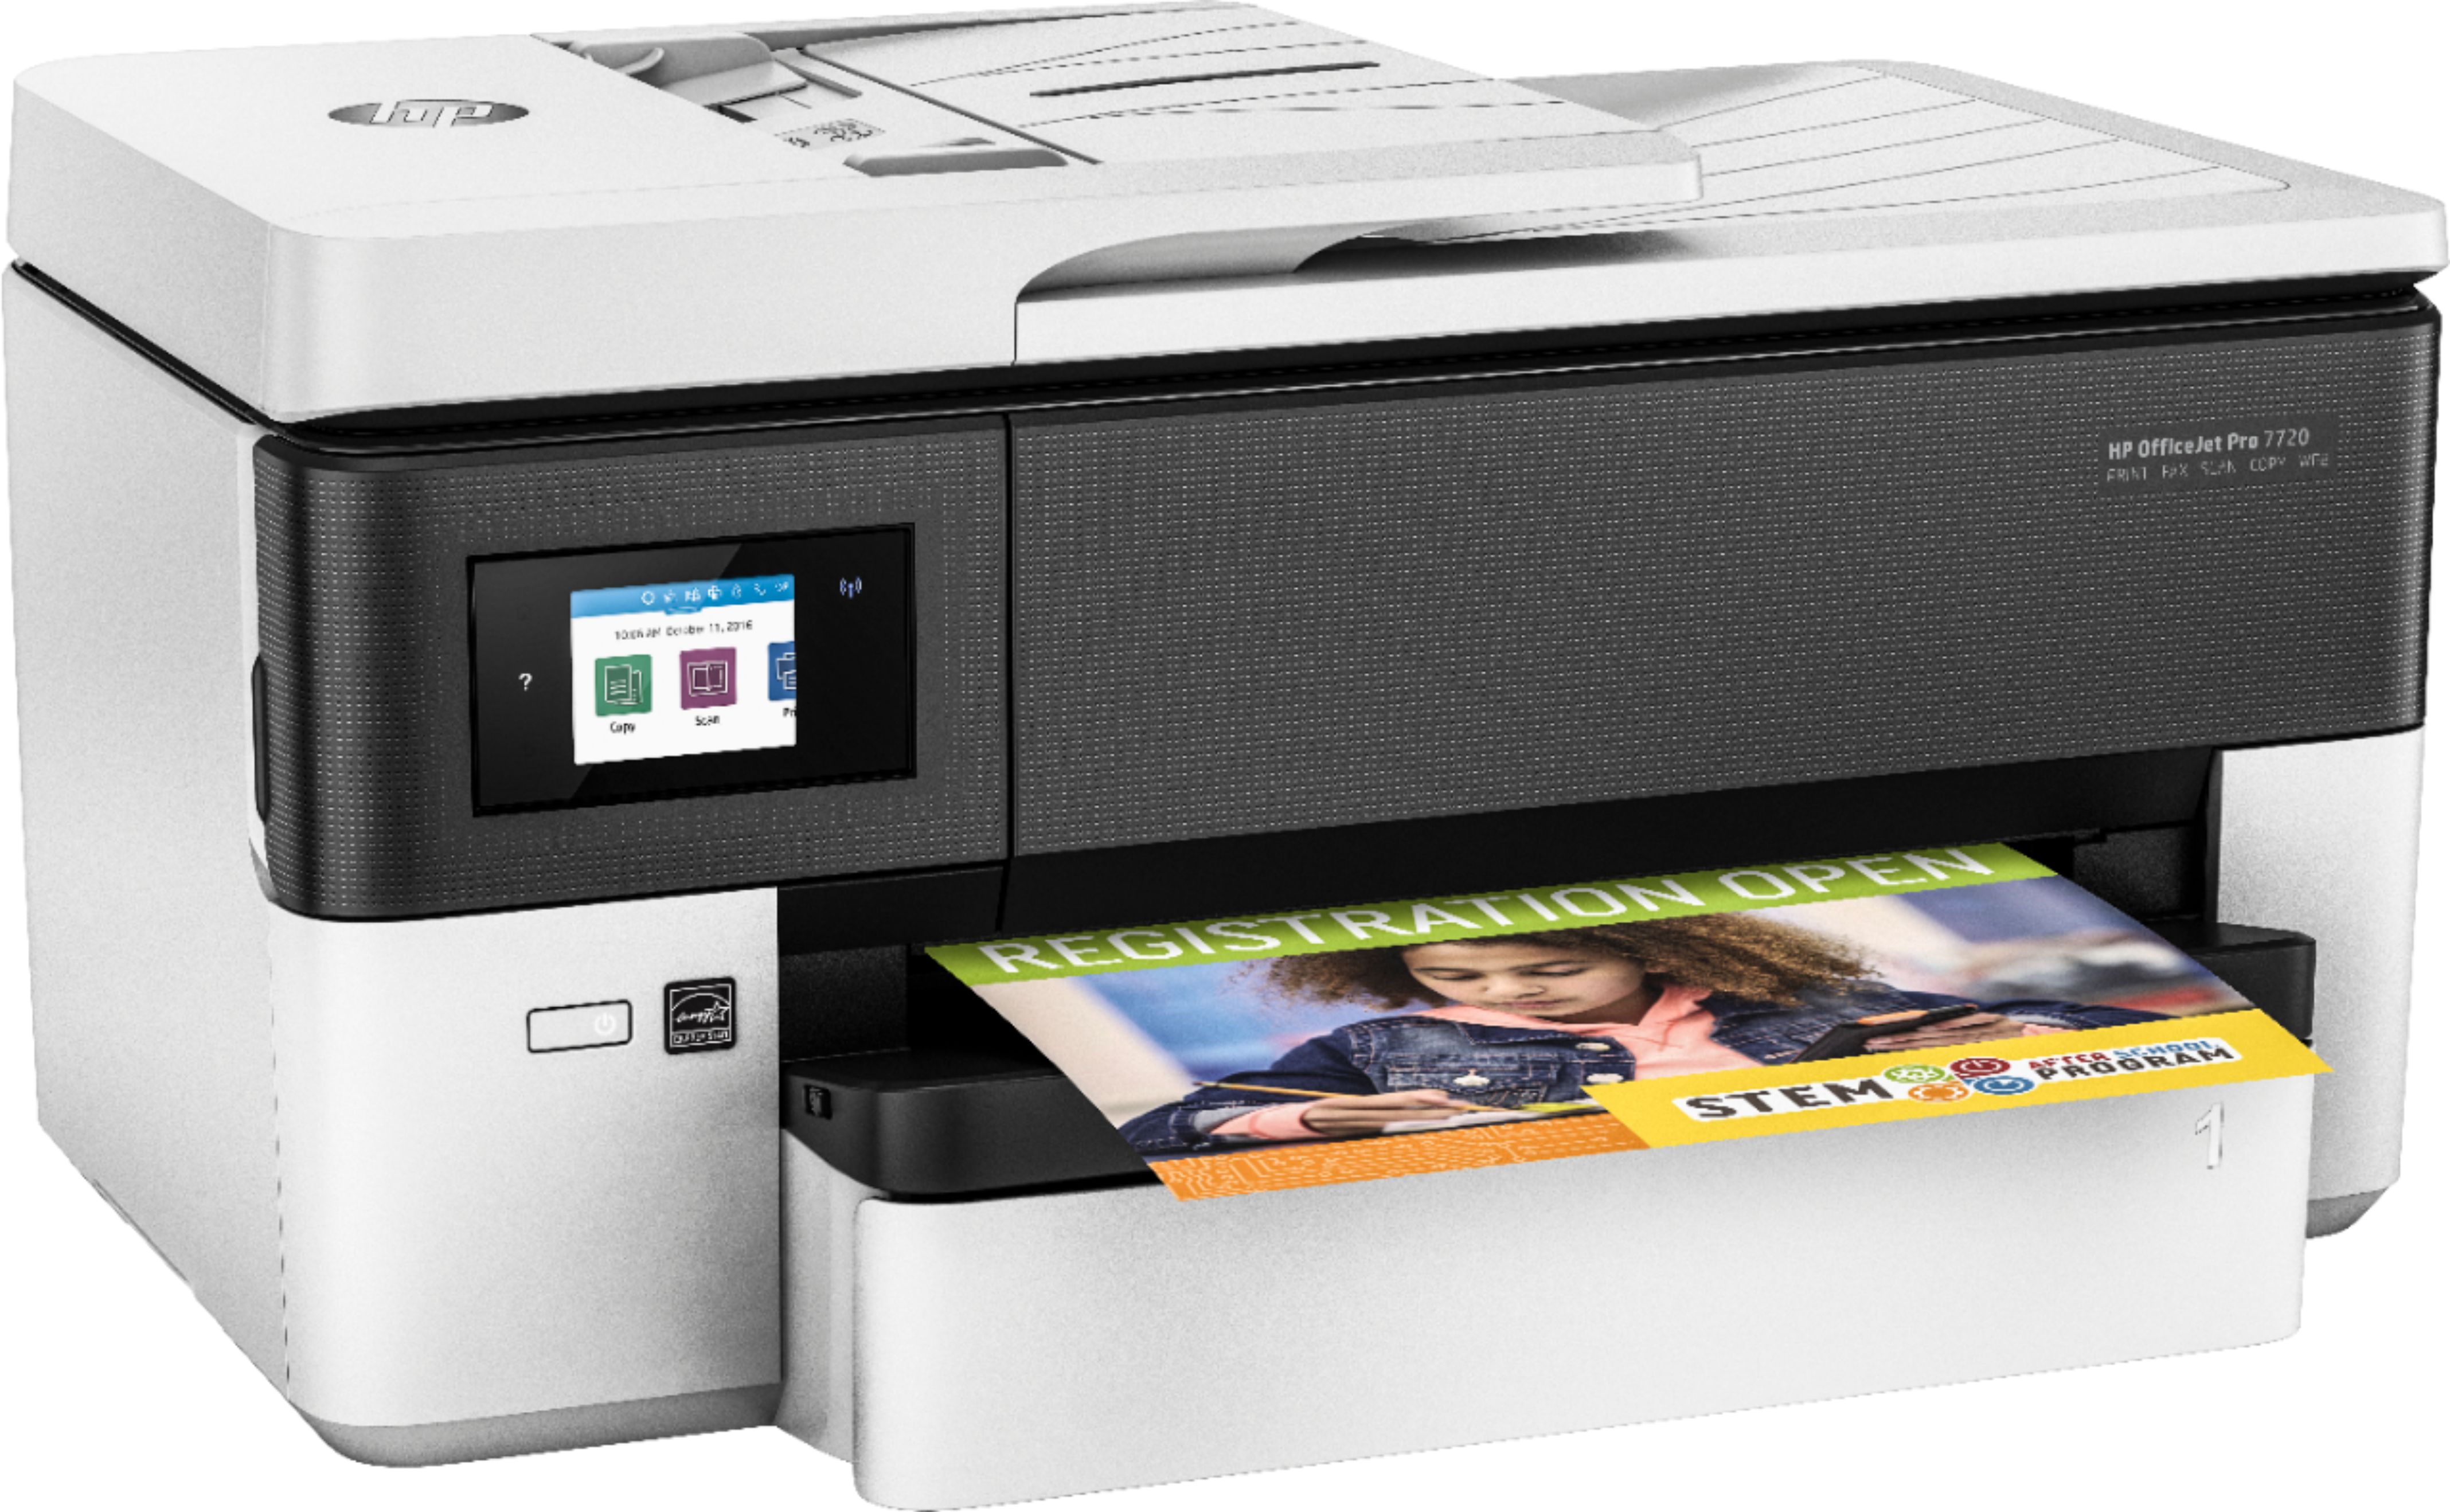 Best Buy Printer Recycle Rebate